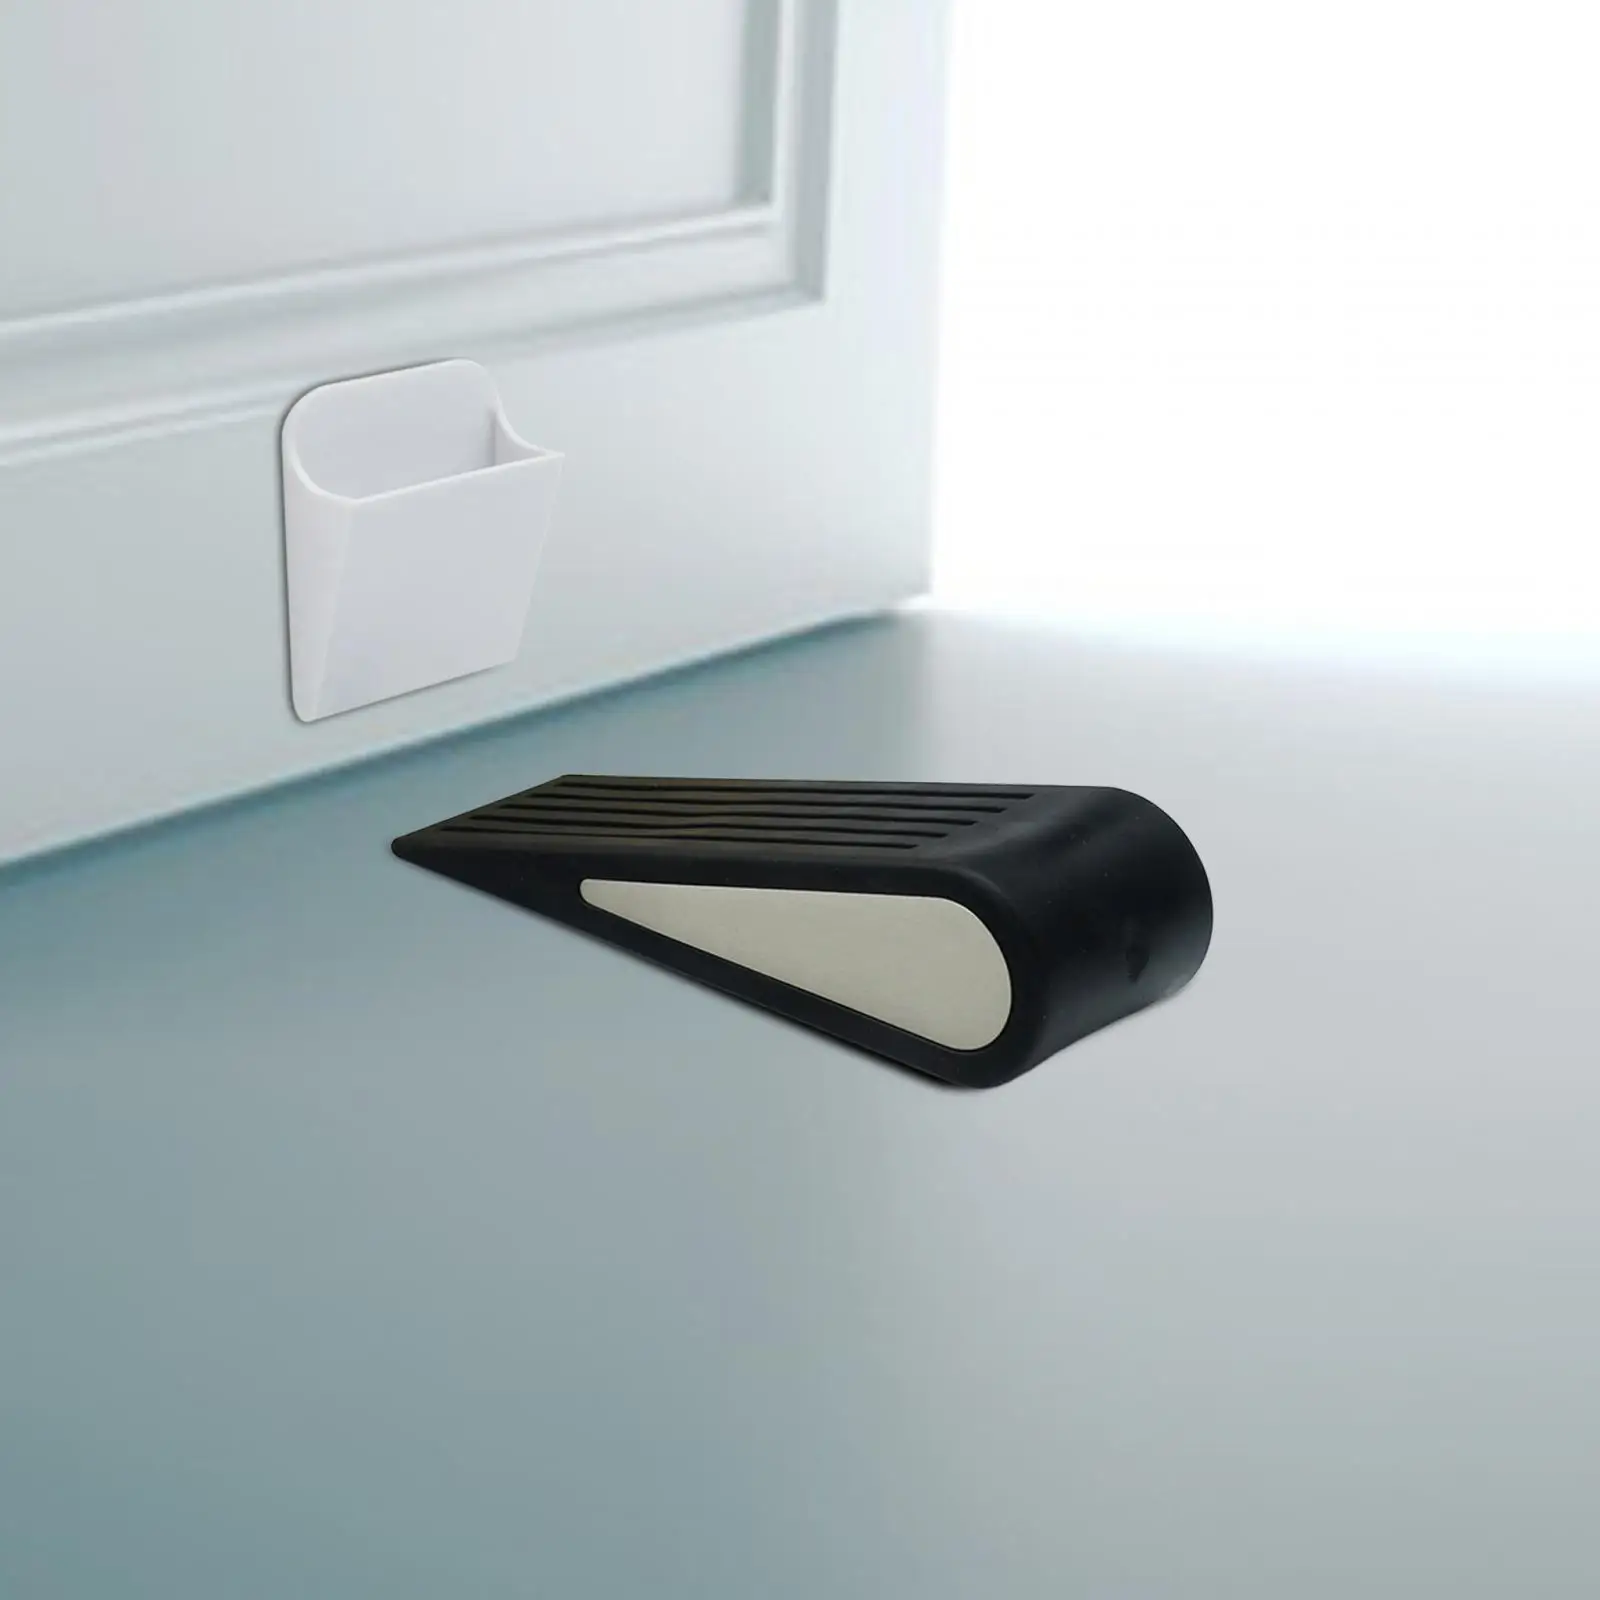 Door Stopper Lightweight Strong Portable Anti Slip Doorstops Door Stop Wedge Protection for Home Bathroom Hotel Office Apartment